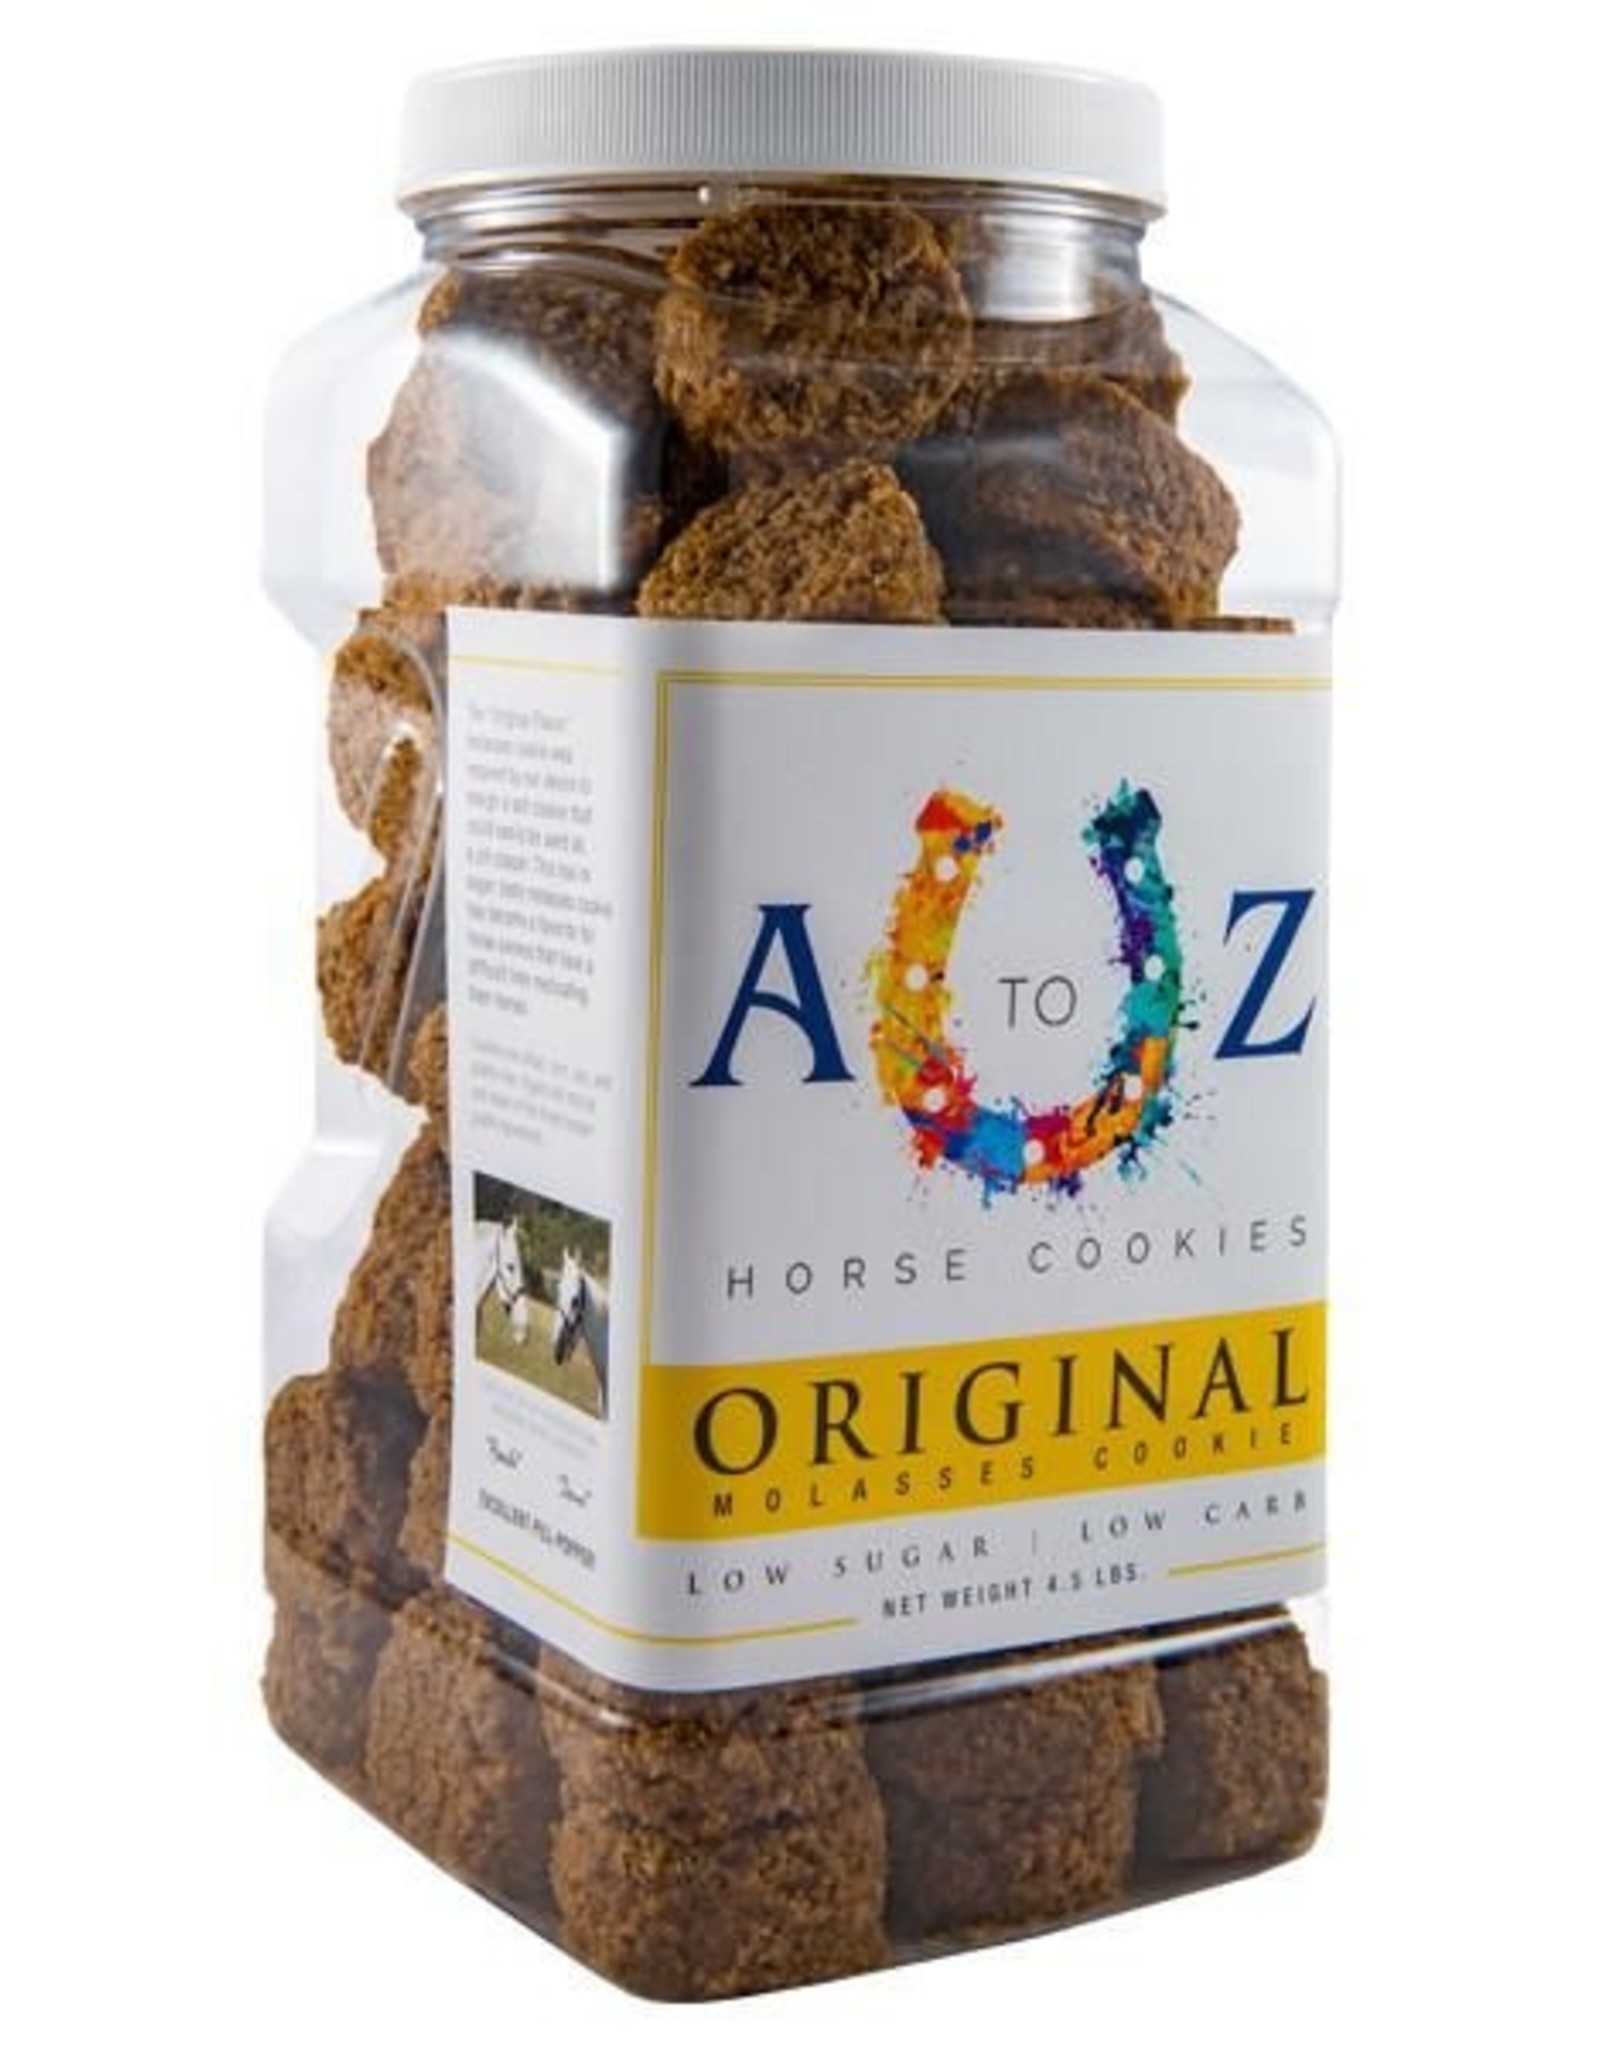 A TO Z A TO Z Horse Cookies - Original Molasses Flavor - 4.5lb Jar